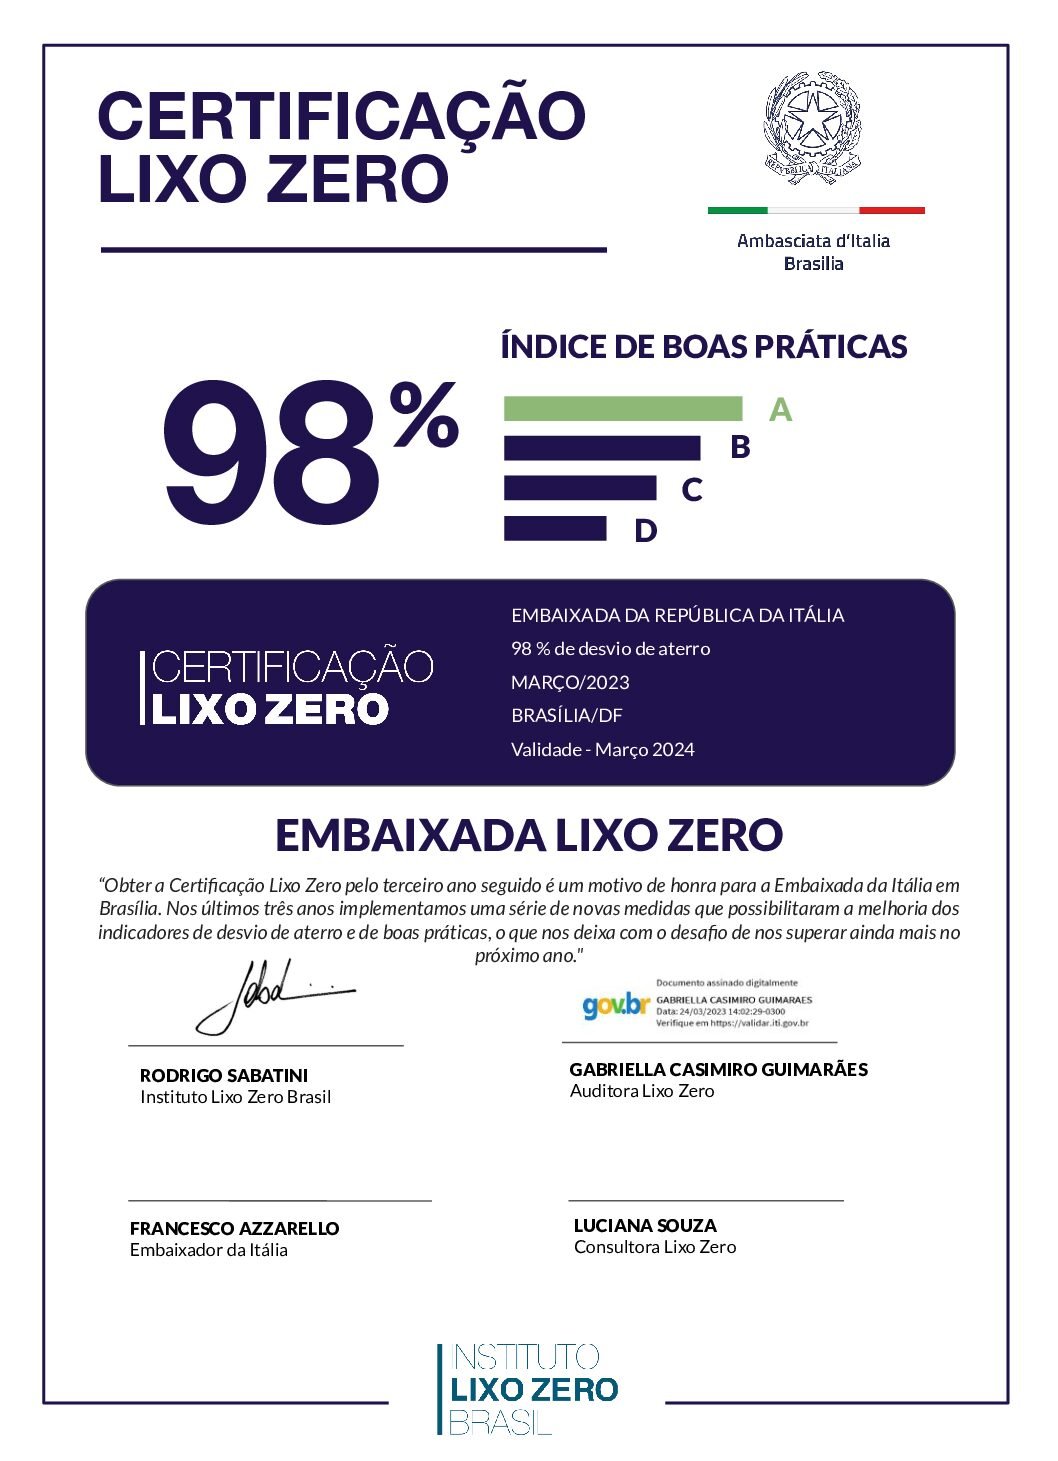 Cópia de CertificaçãoLixoZero_Estabelecimento_Embaixada-da-Itália_Brasília_DF.pptx